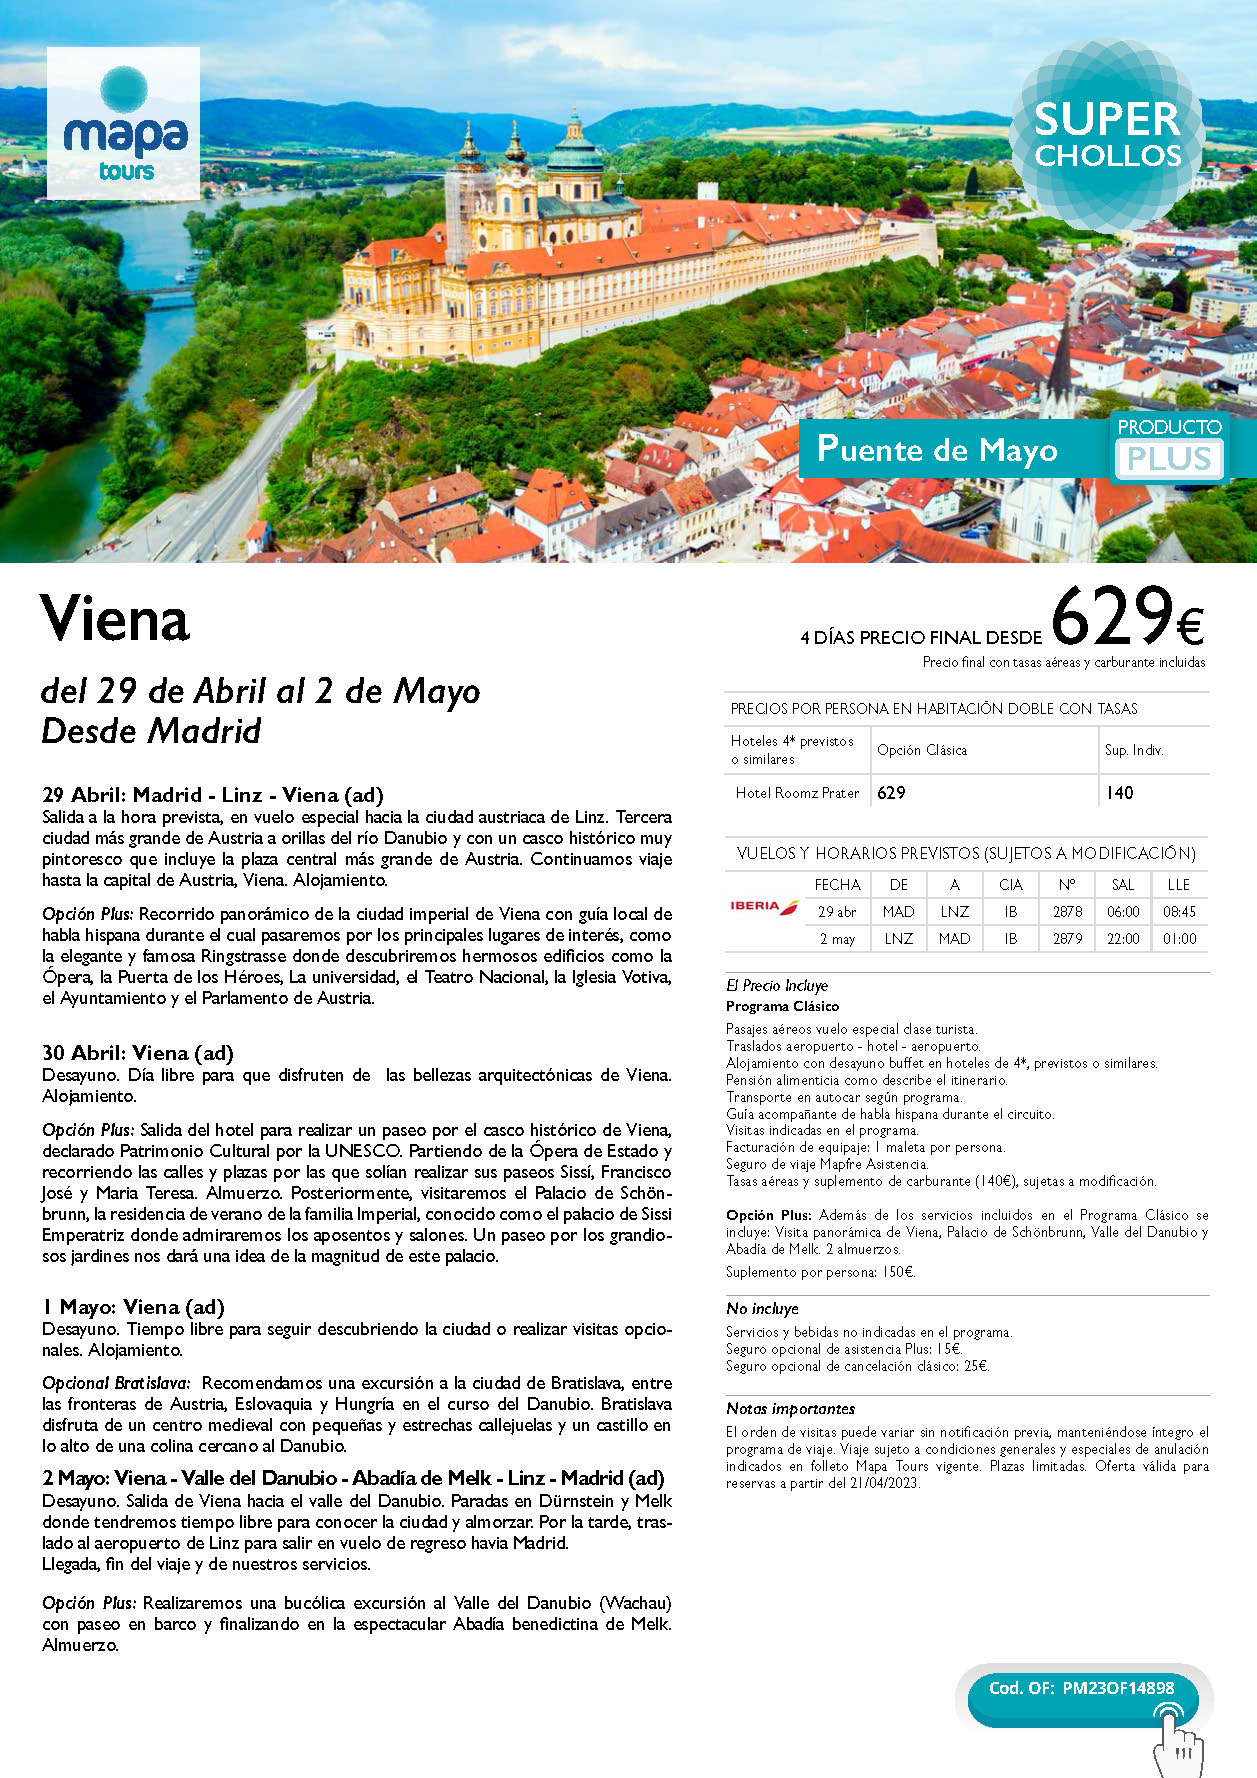 Oferta Mapa Tours Puente de Mayo 2023 Viena 4 dias salida 29 abril en vuelo directo desde Madrid